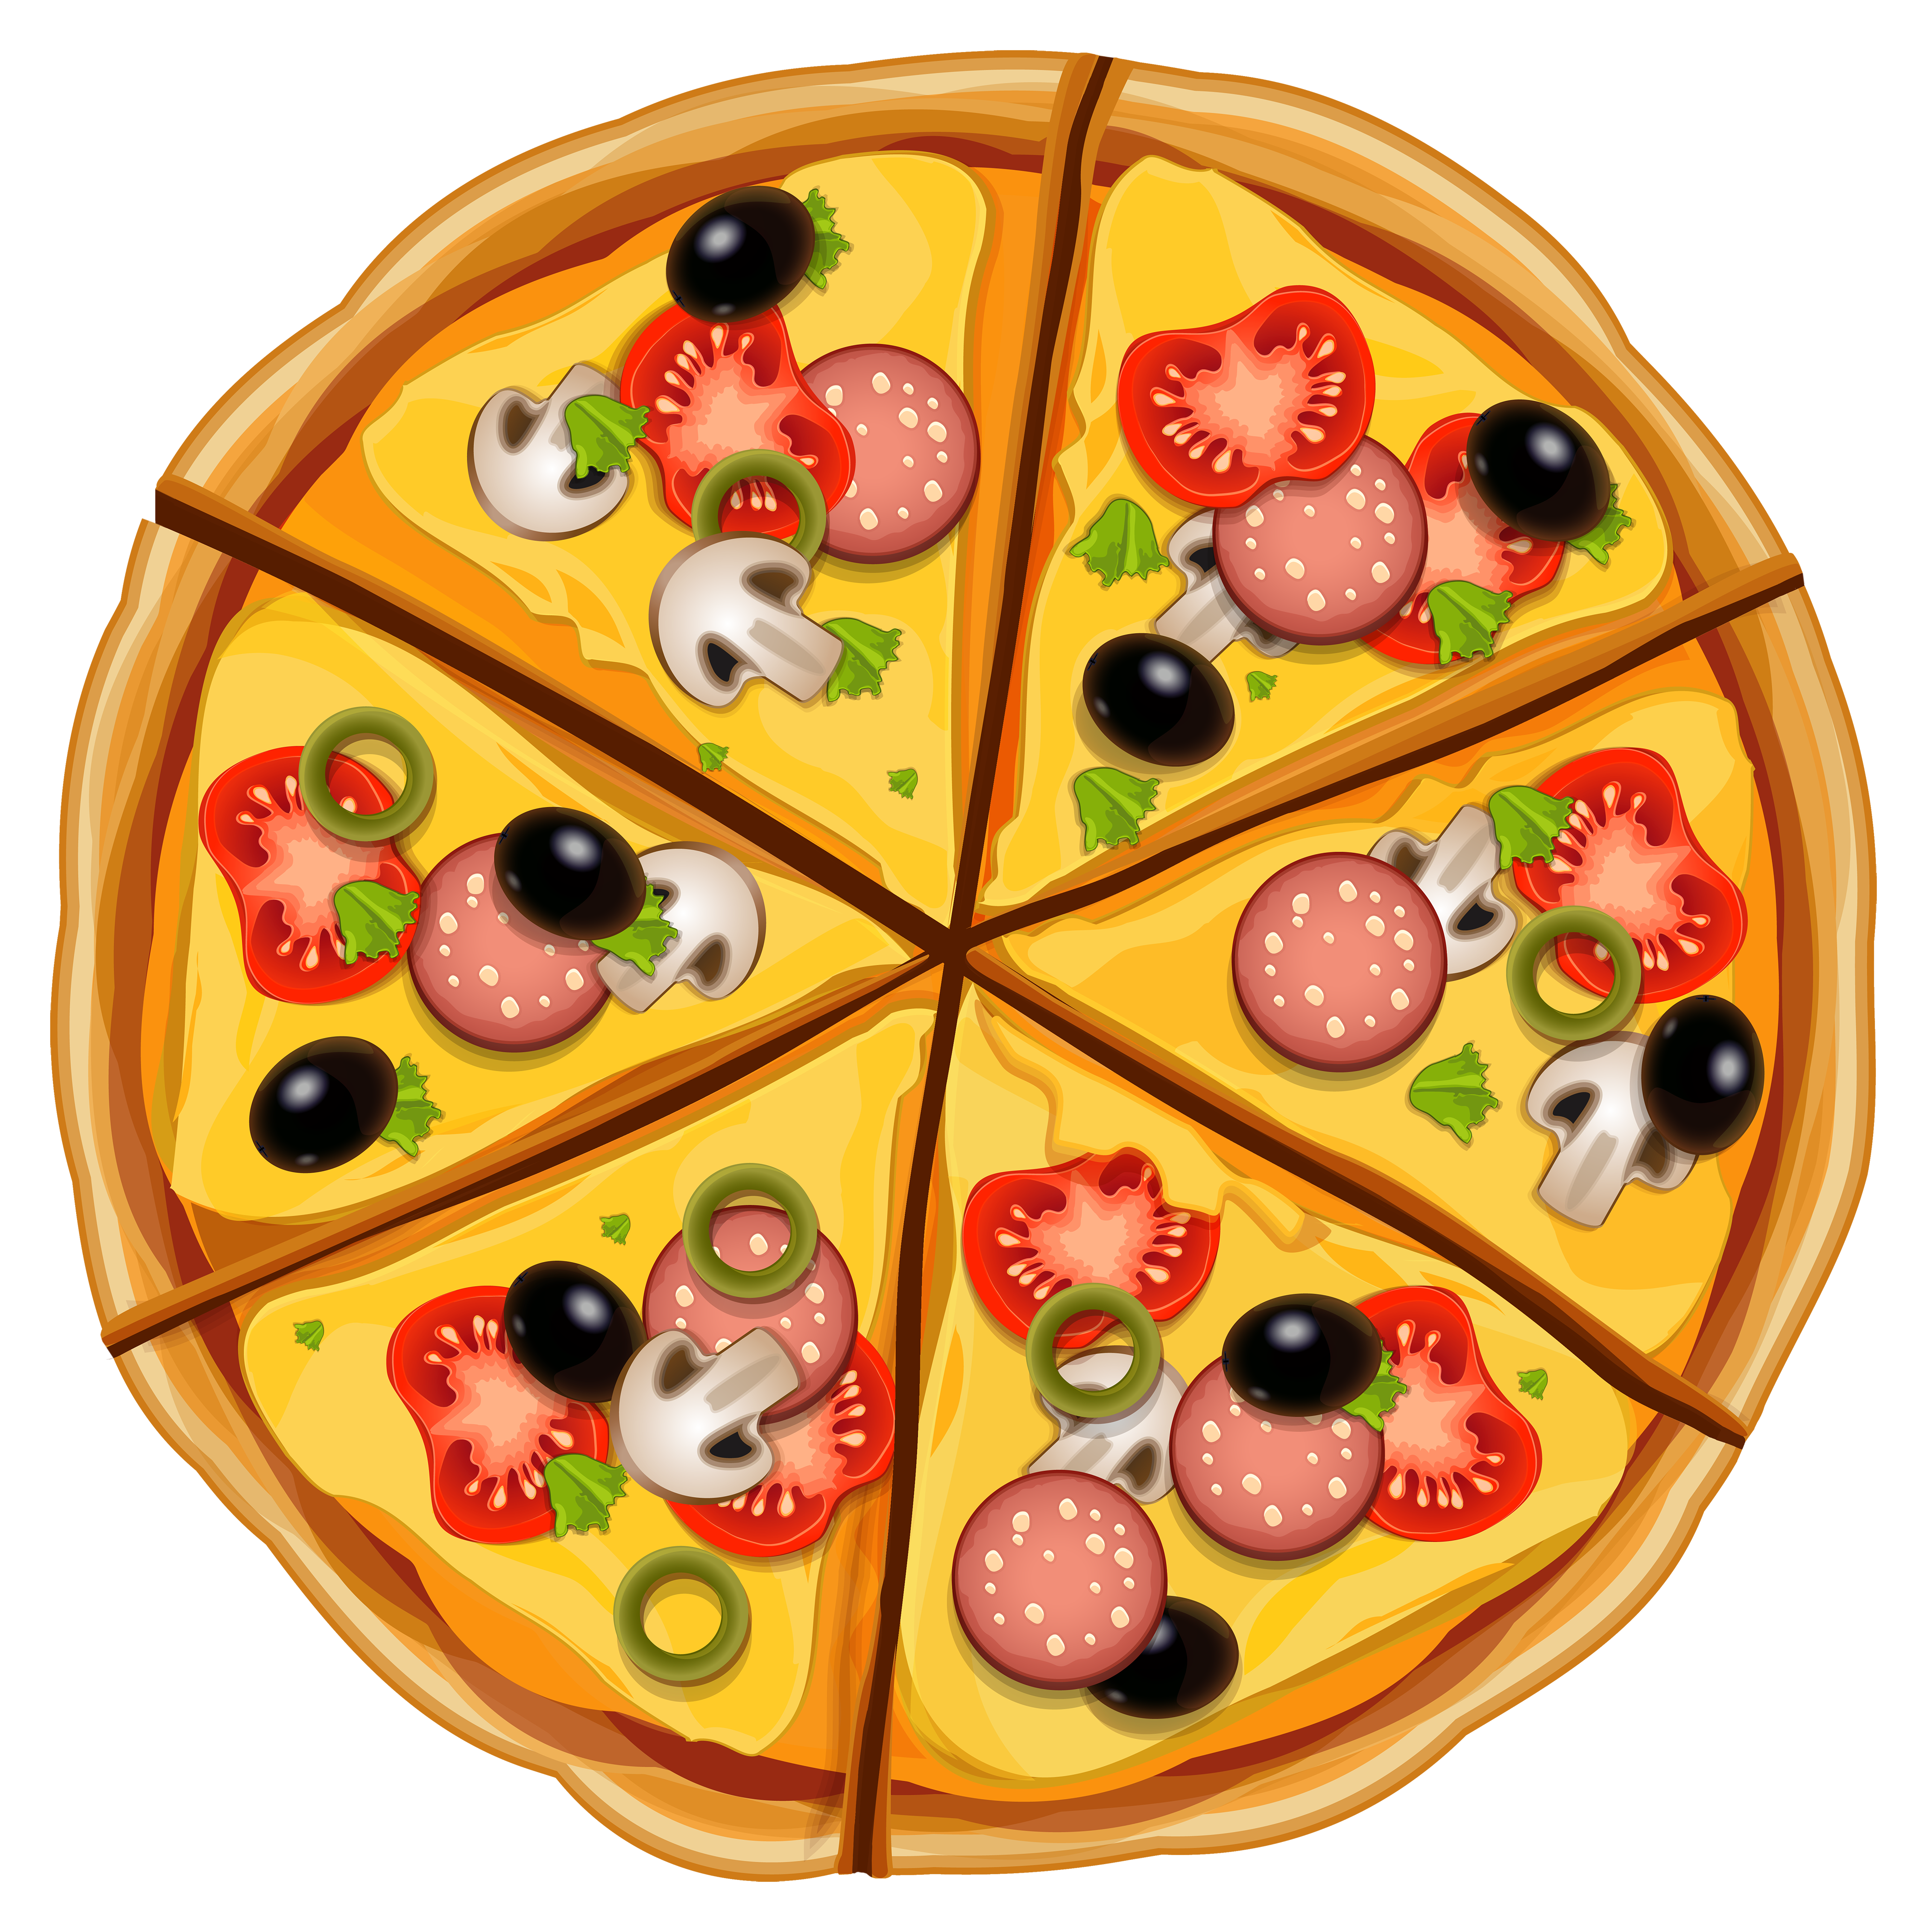 Free Pizza Clip Art Pictures Clipartix